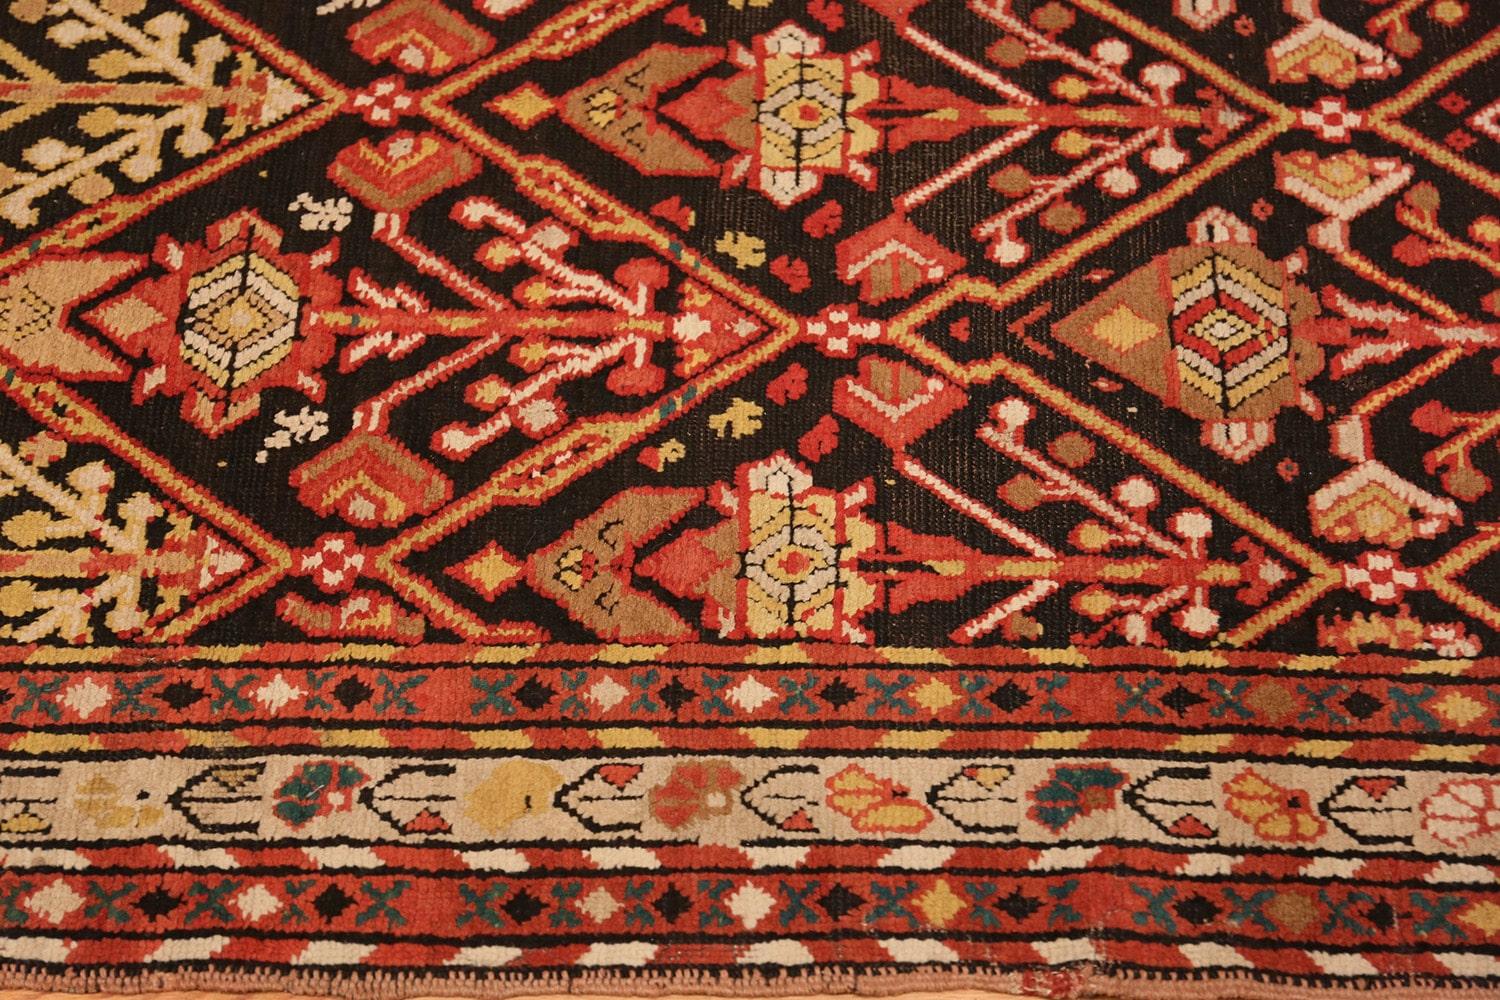 Antique Rare Caucasian Shrub Design Kazak Runner Rug, Country of Origin / Rug Type: Caucasian Rug, Circa date: 1900. Size: 3 ft 6 in x 9 ft 7 in (1.07 m x 2.92 m)